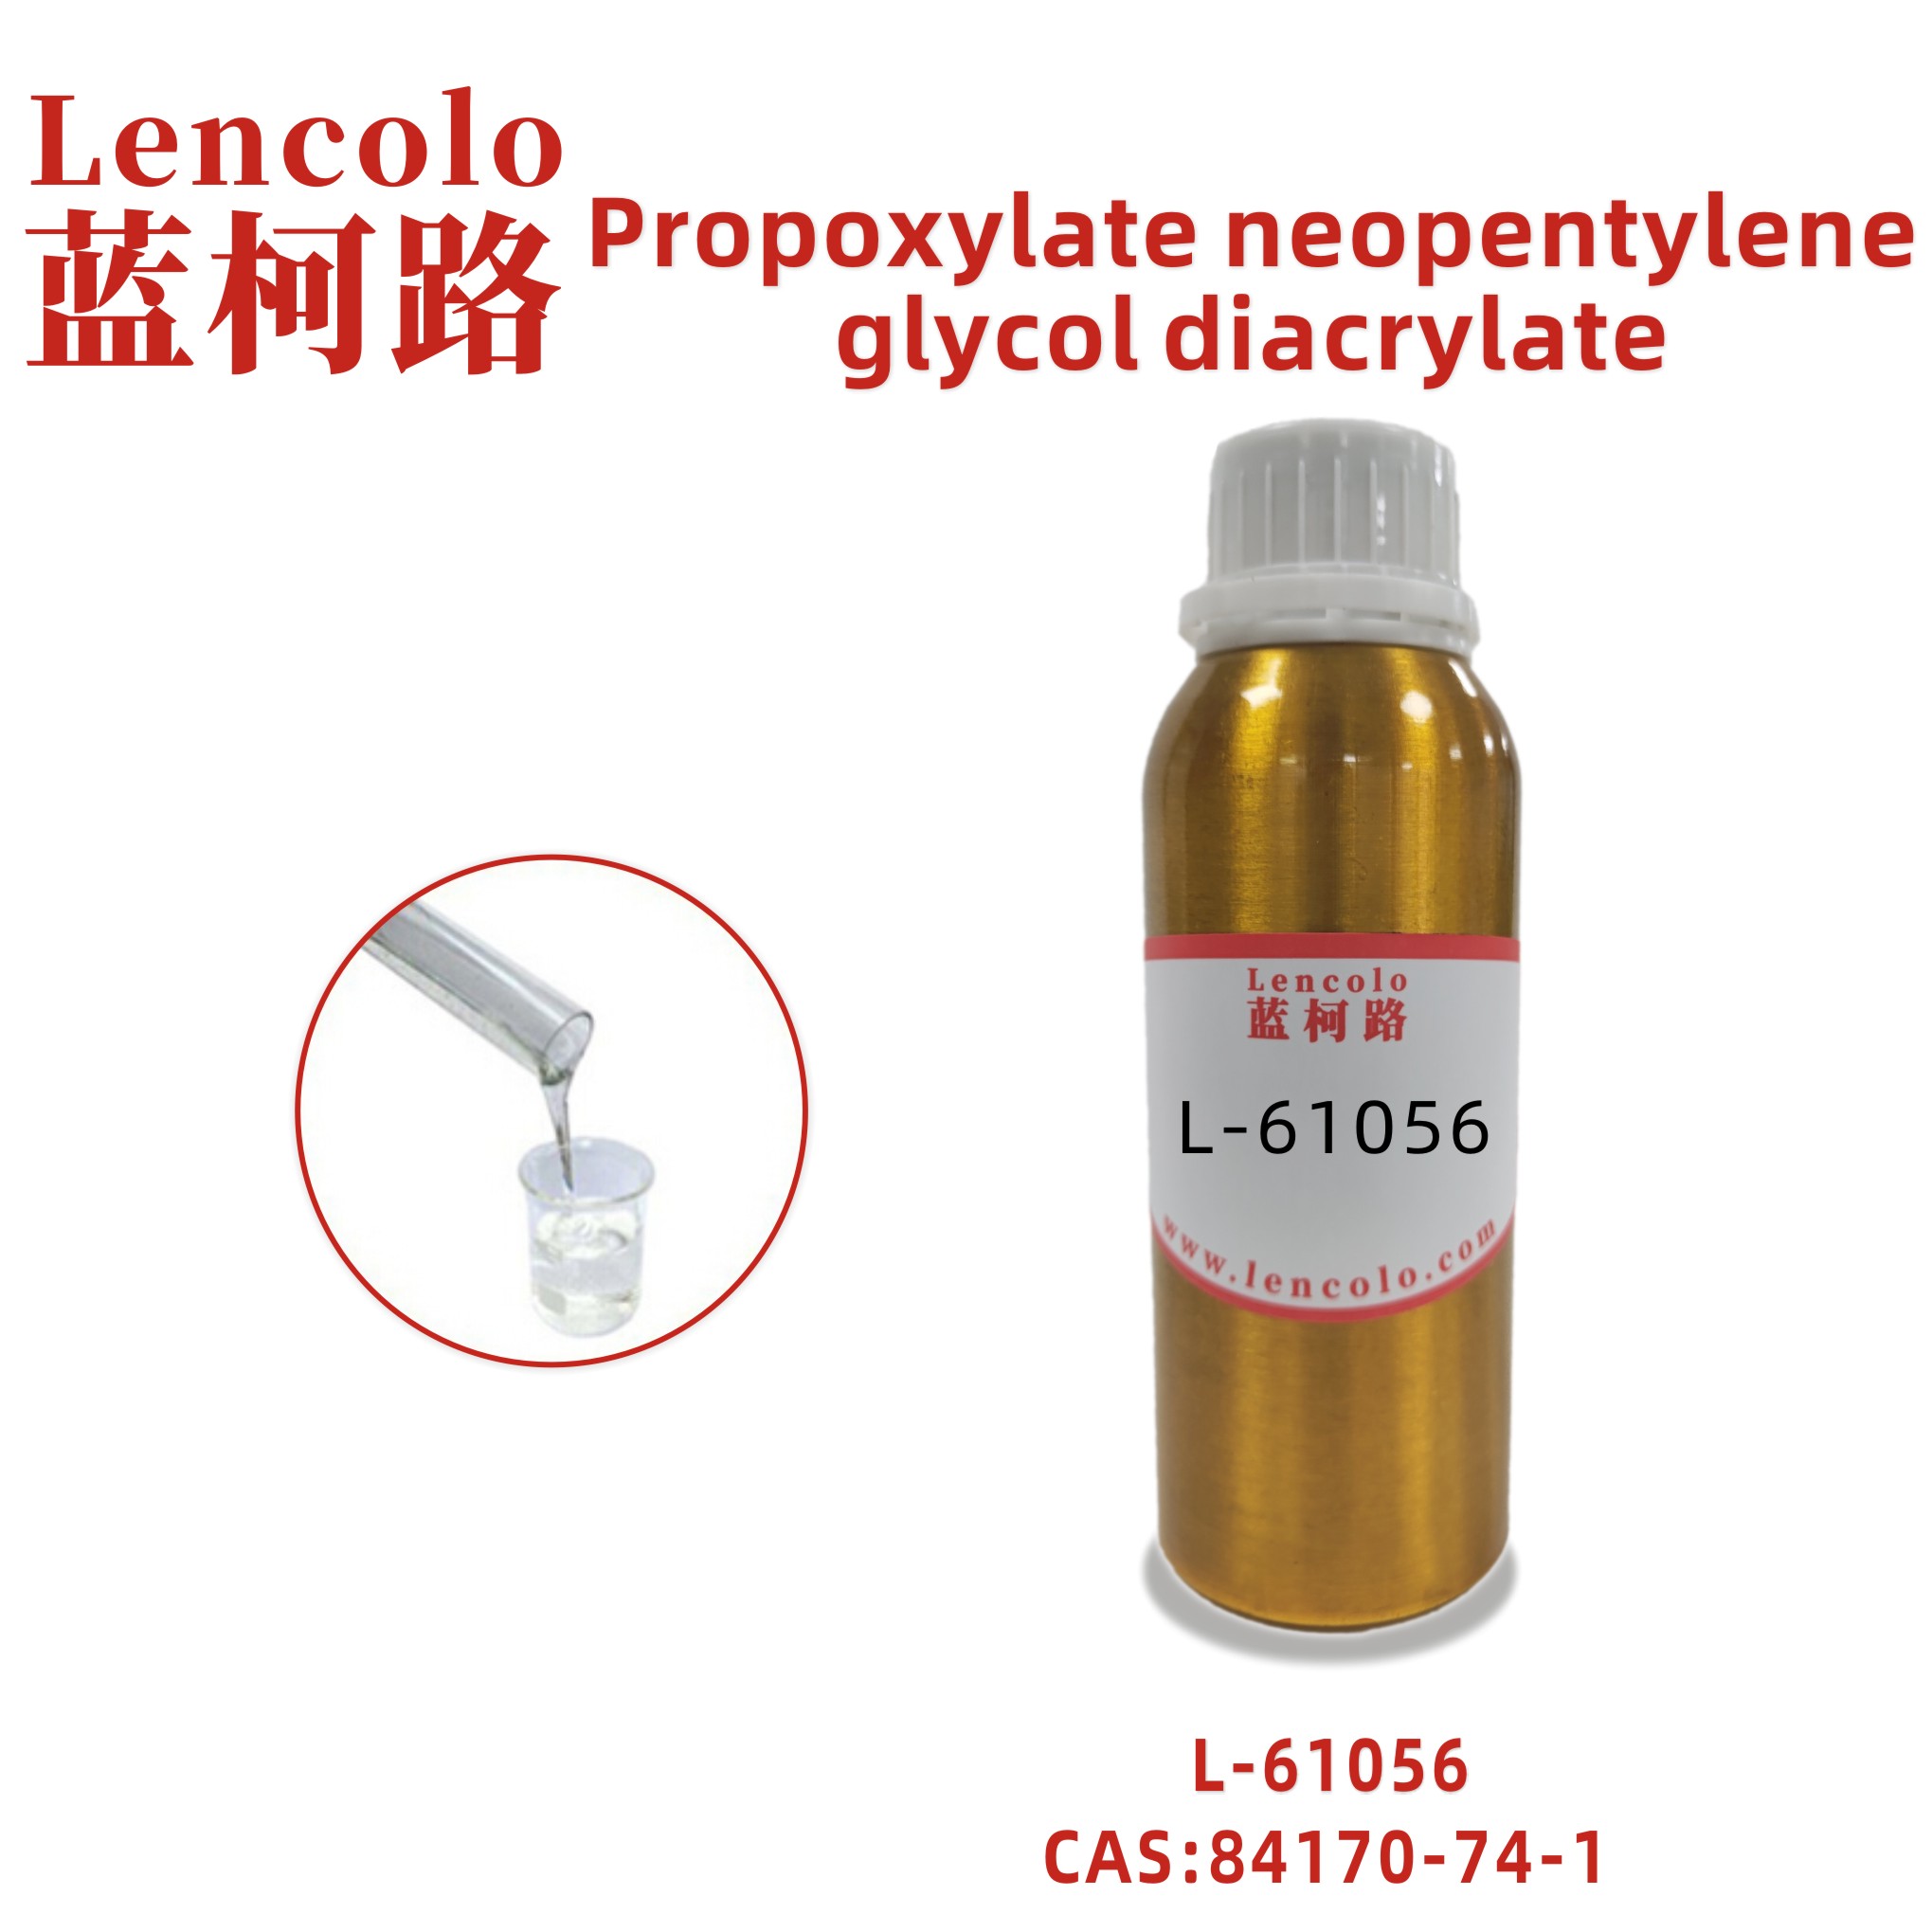 L-61056 Propoxylate neopentylene glycol diacrylate